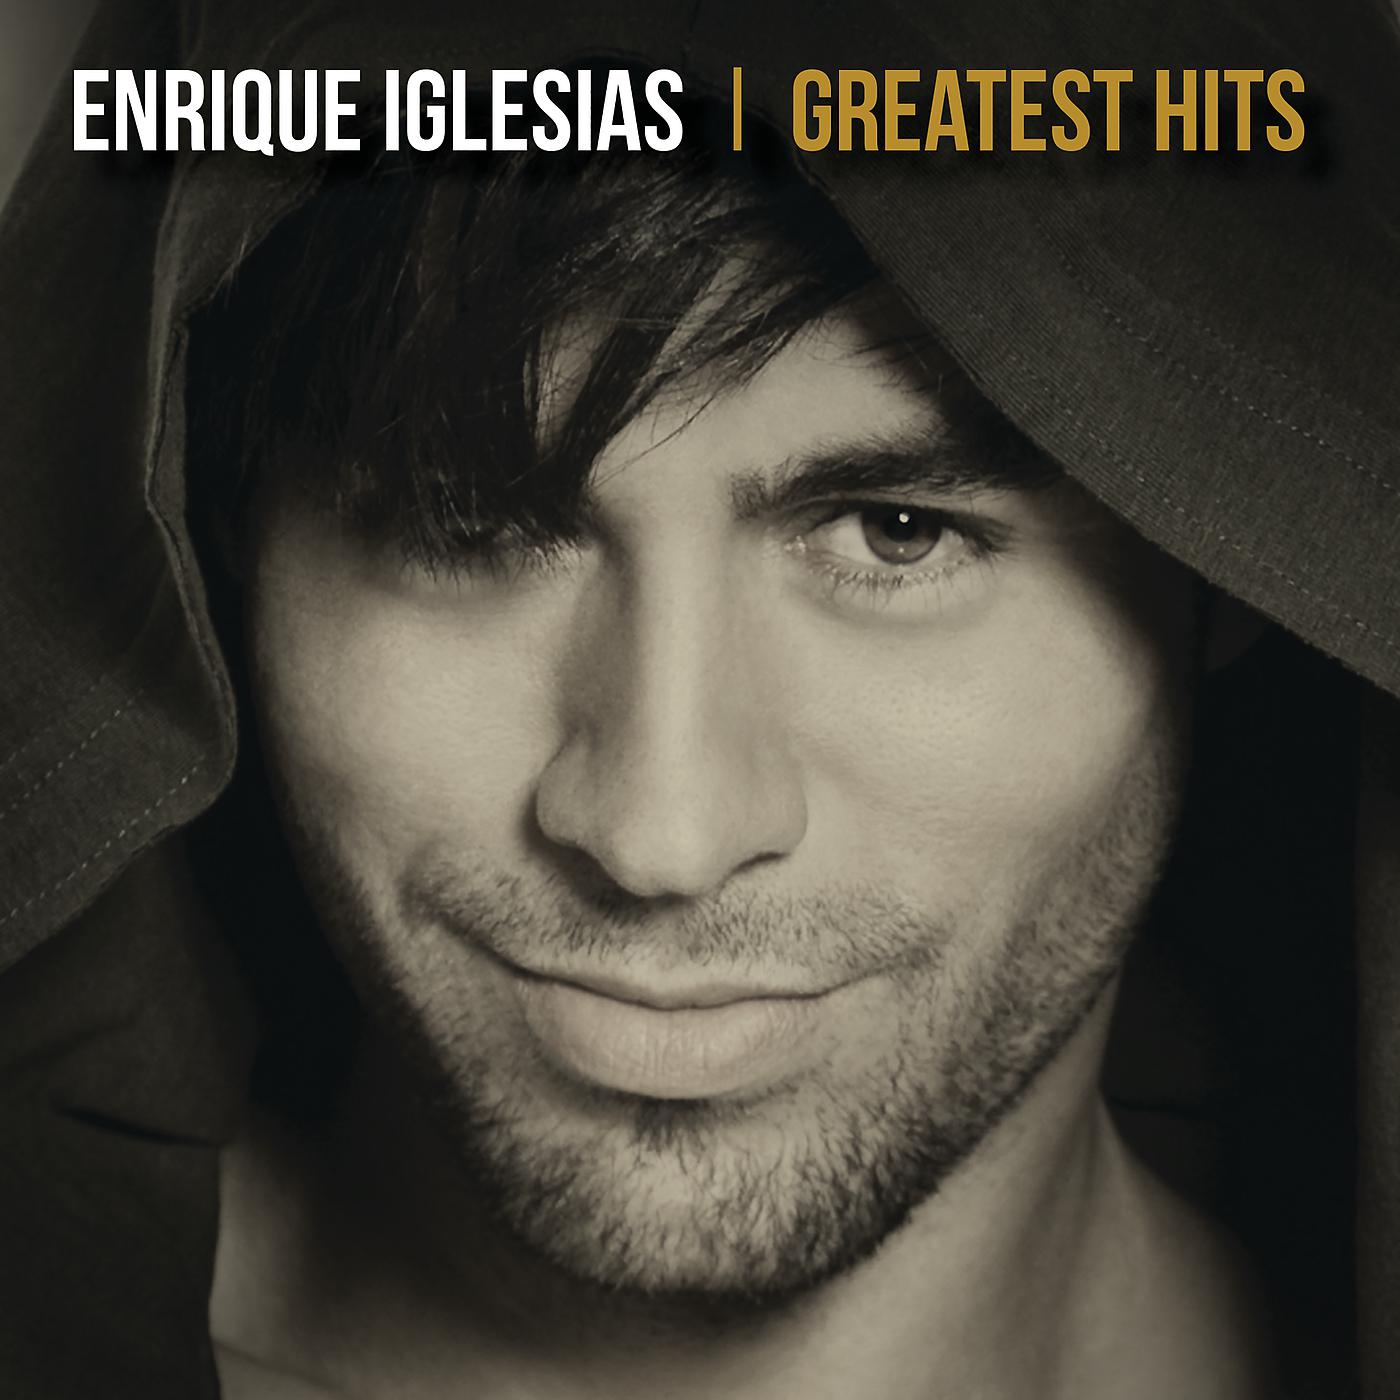 Enrique Iglesias - Could I Have This Kiss Forever скачать ремикс 